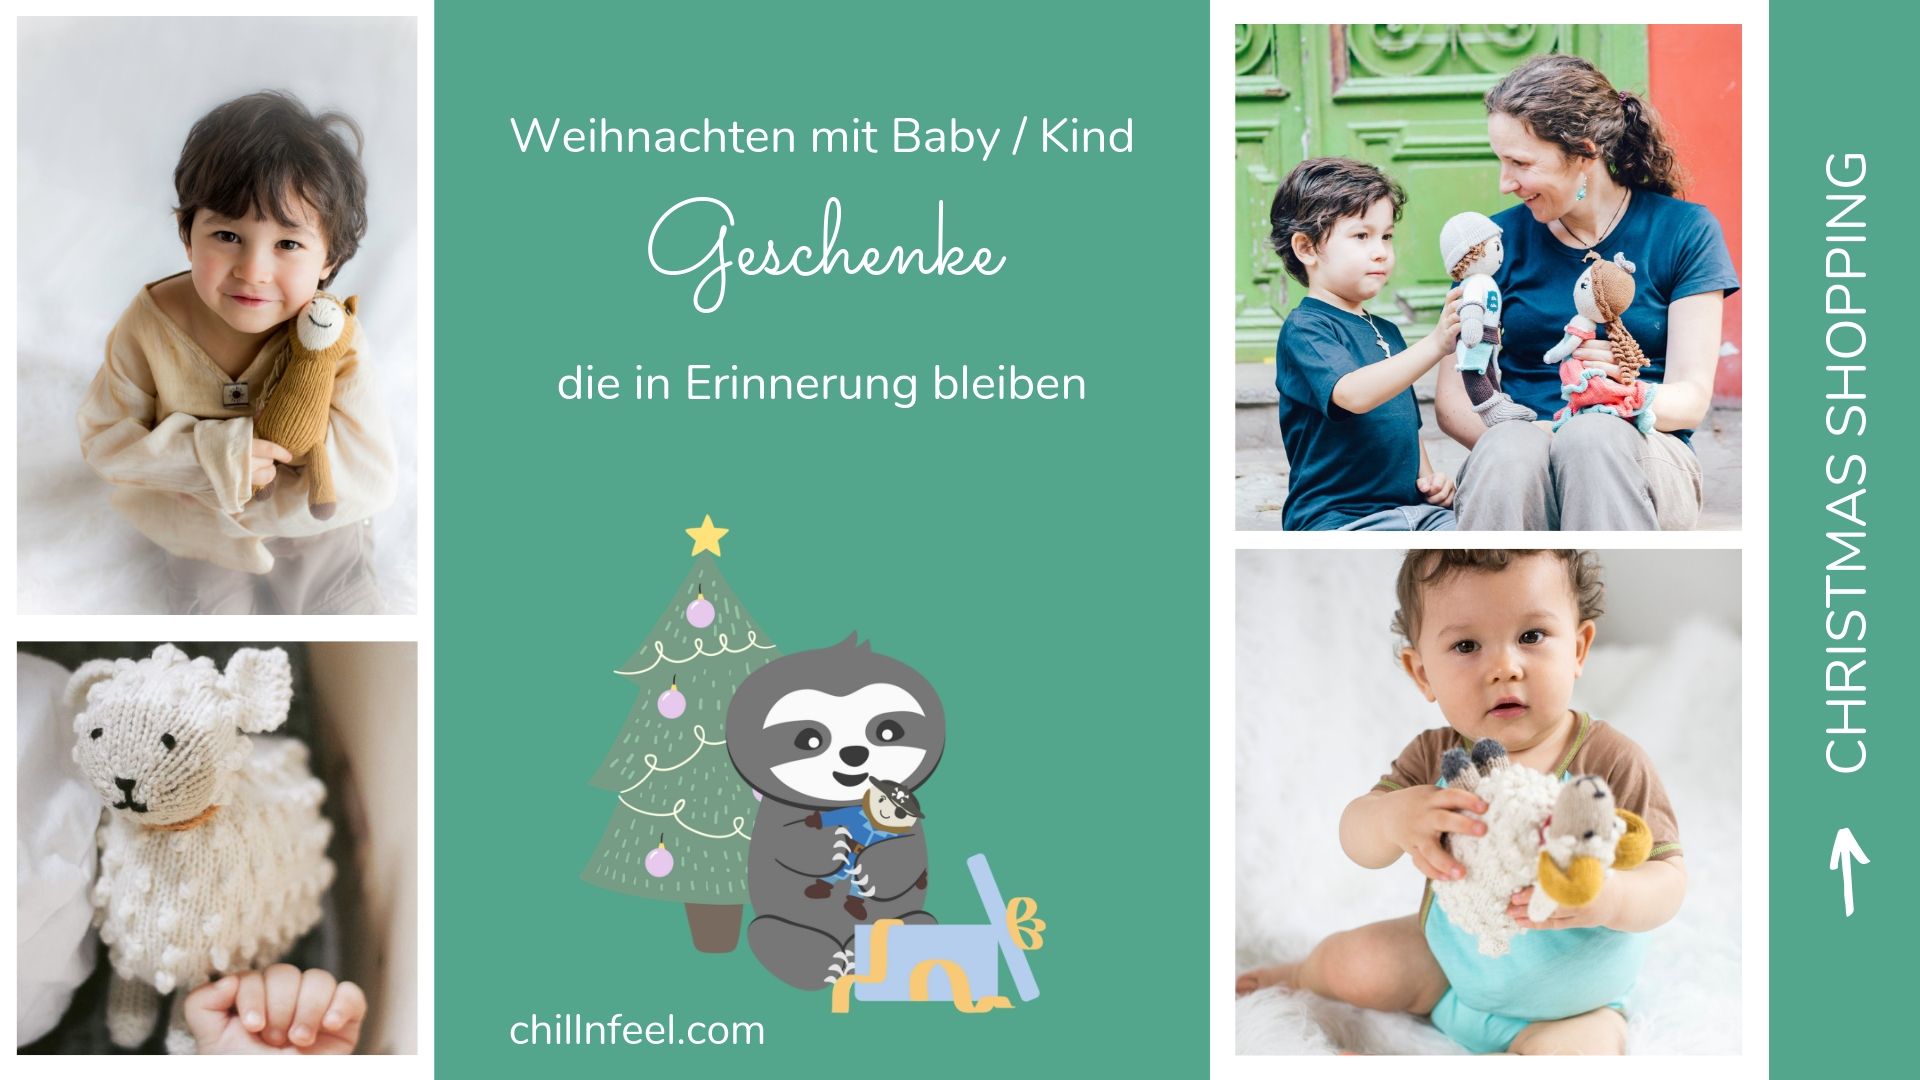 DIY Weihnachtssterne_Weihnachtsgeschenke für Babys_ChillnFeel